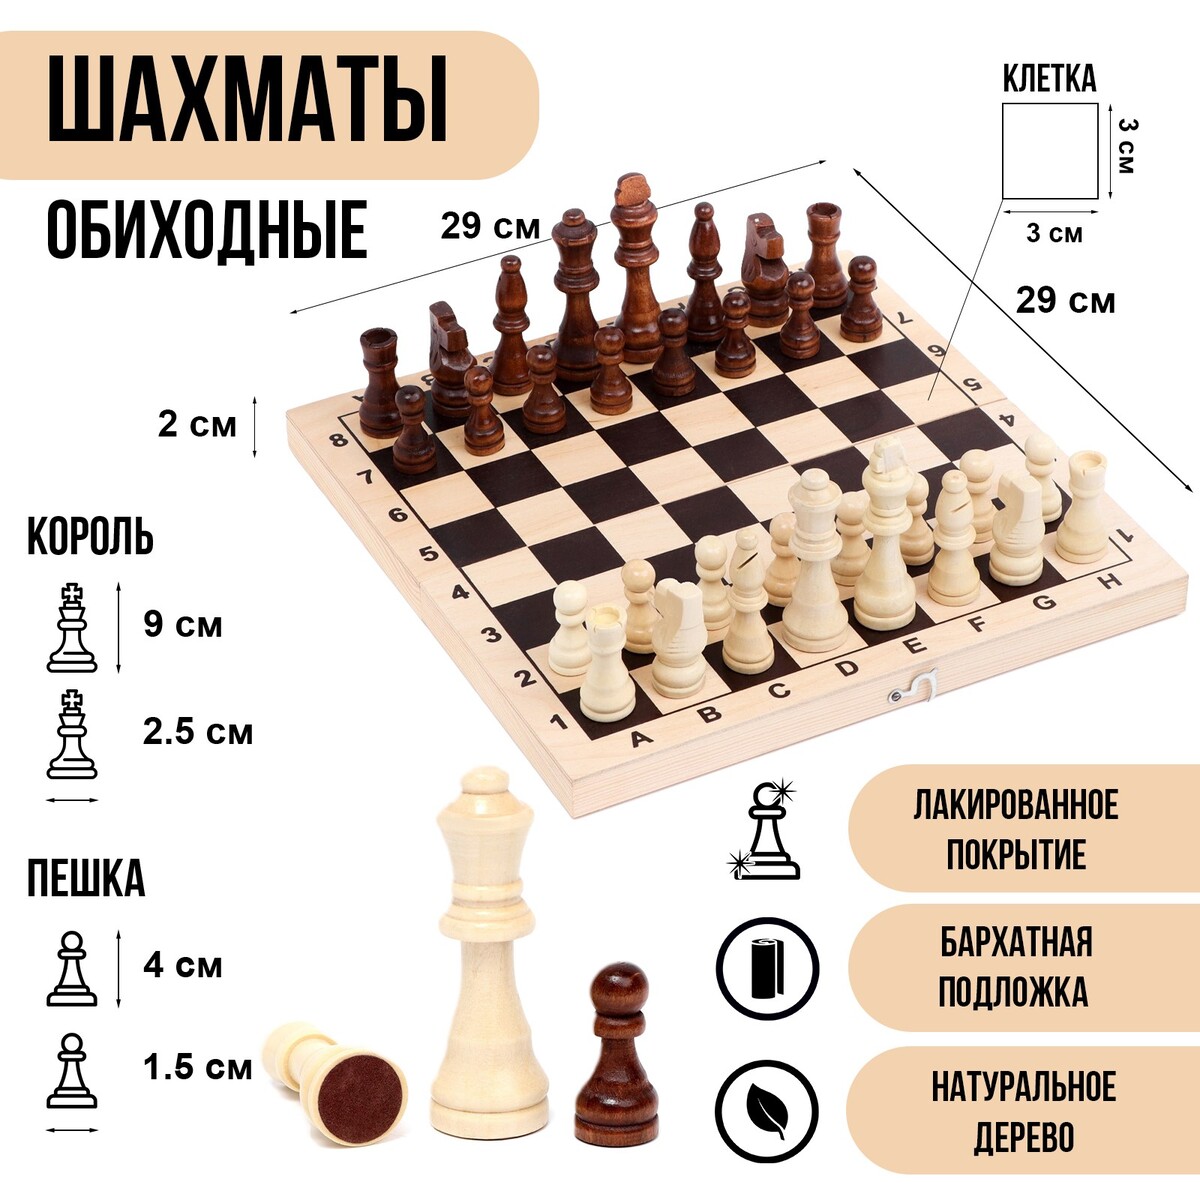 Шахматы деревянные обиходные 29 х 29 см, король h-9 см, пешка h-4 см шахматы деревянные 40 х 40 см